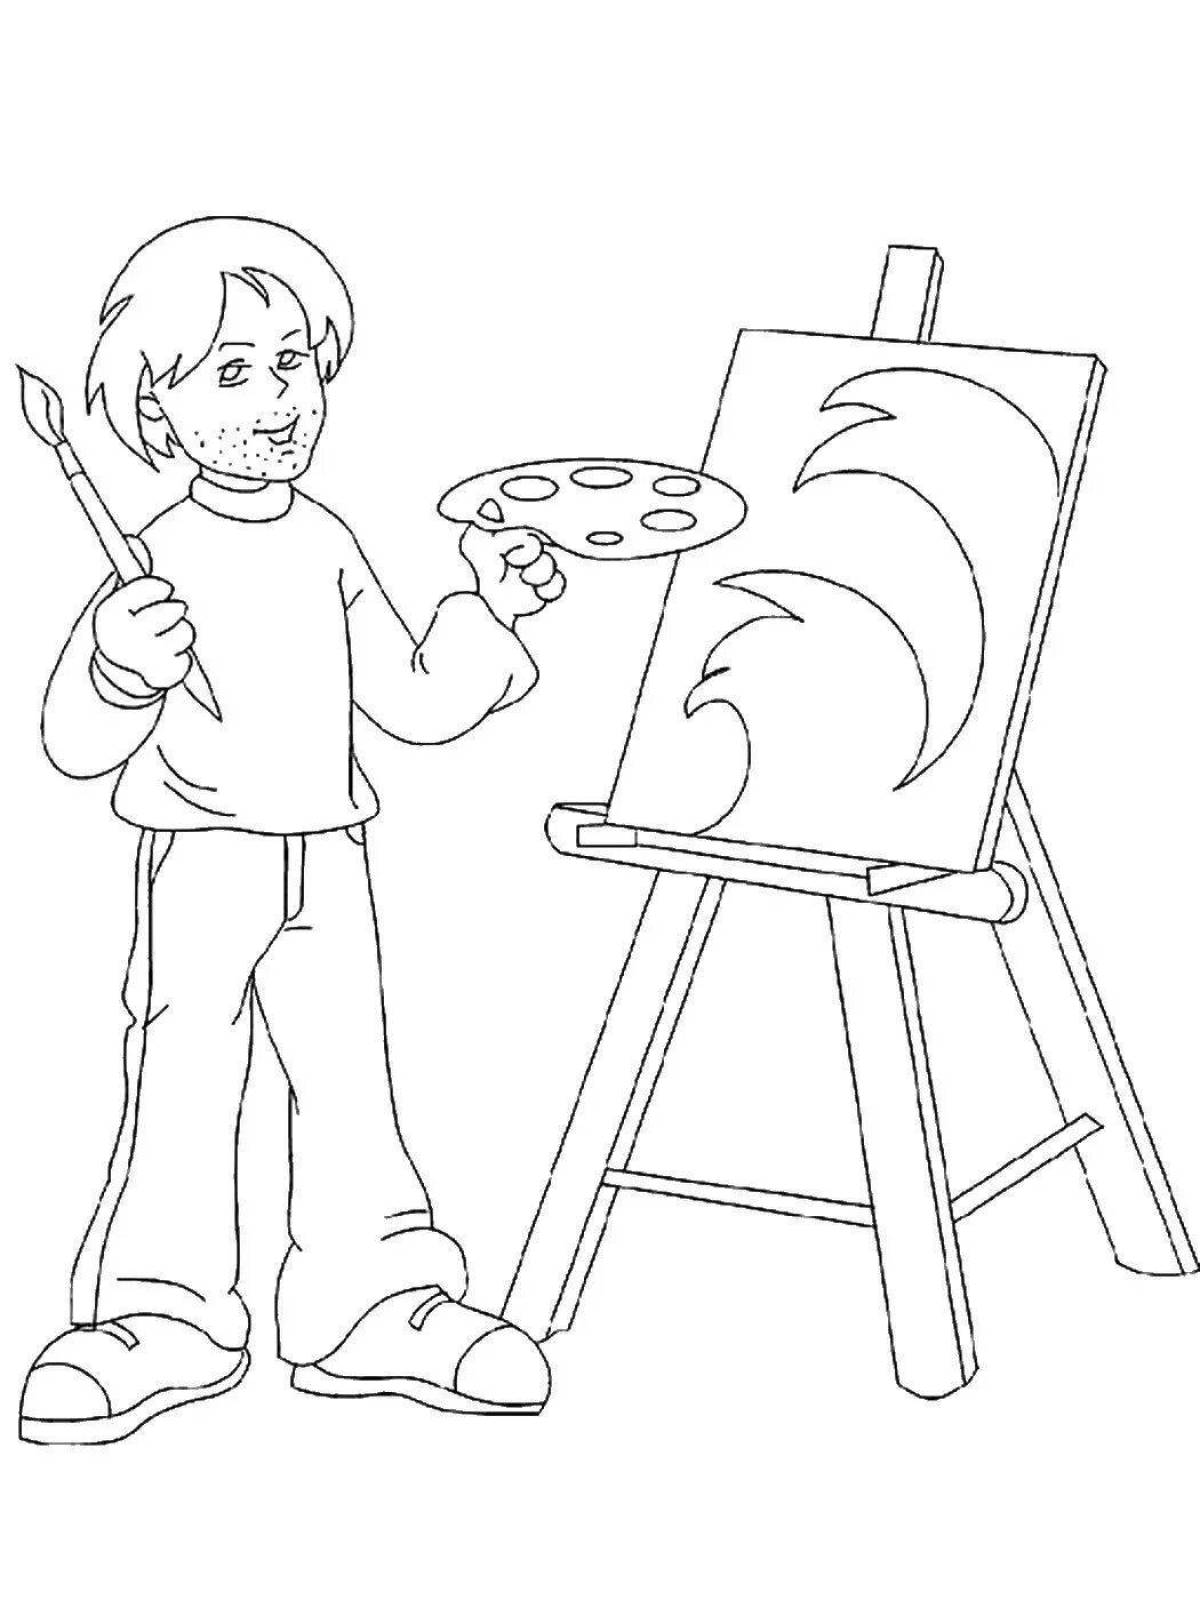 Fun coloring artist profession